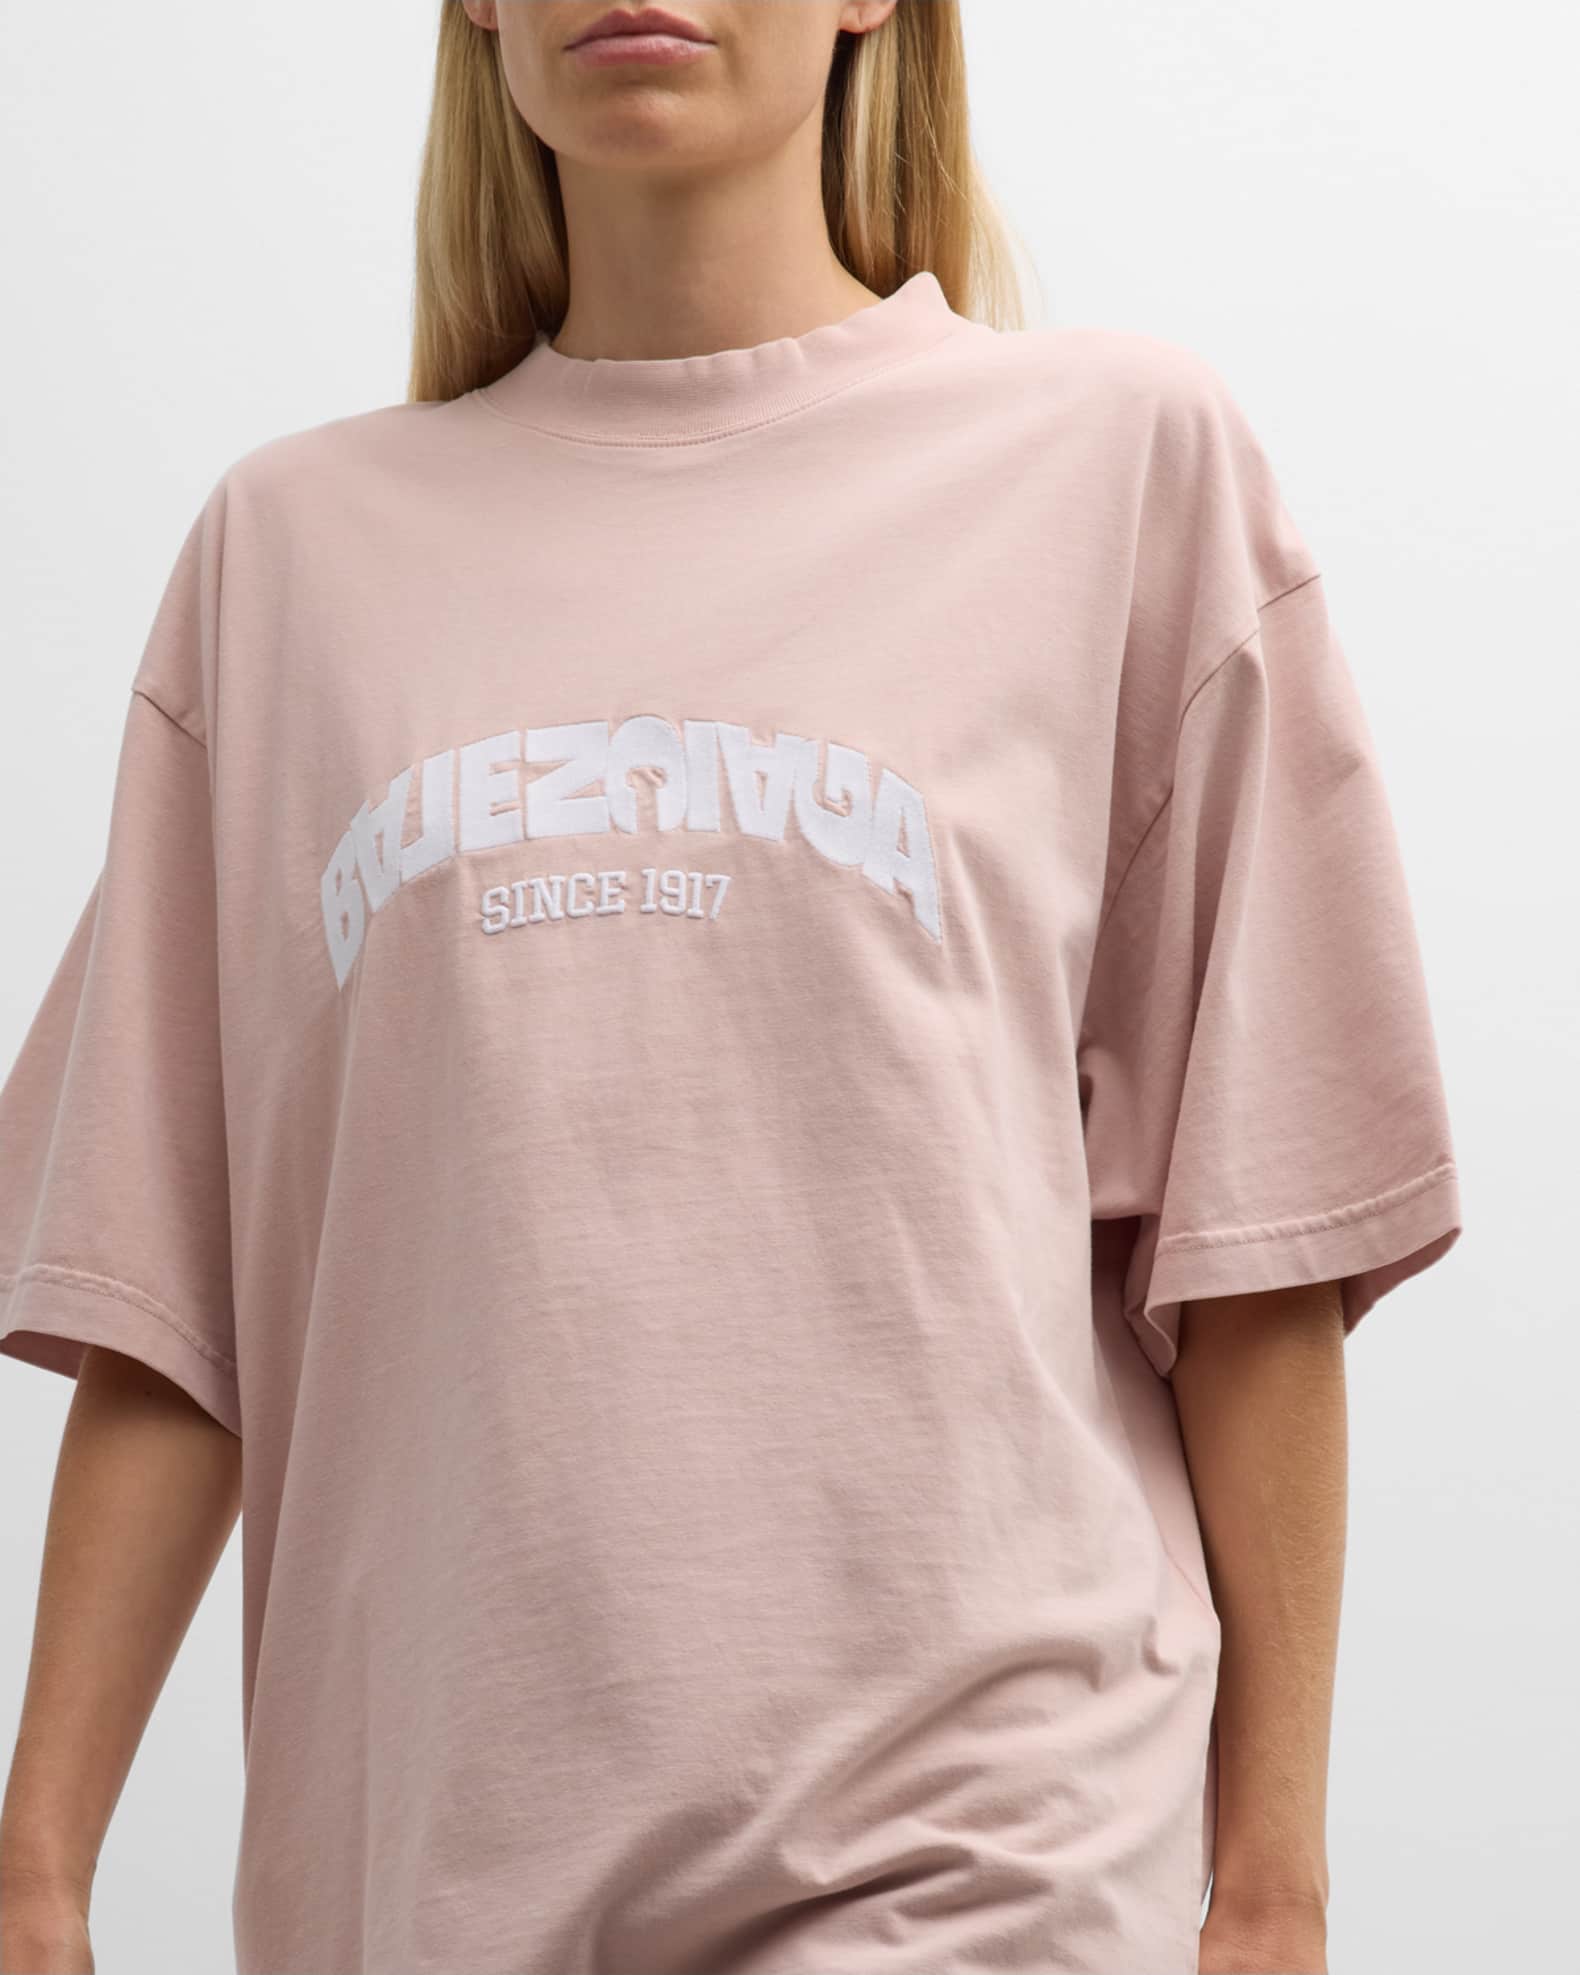 Back Flip T-shirt Medium Fit in Light Pink